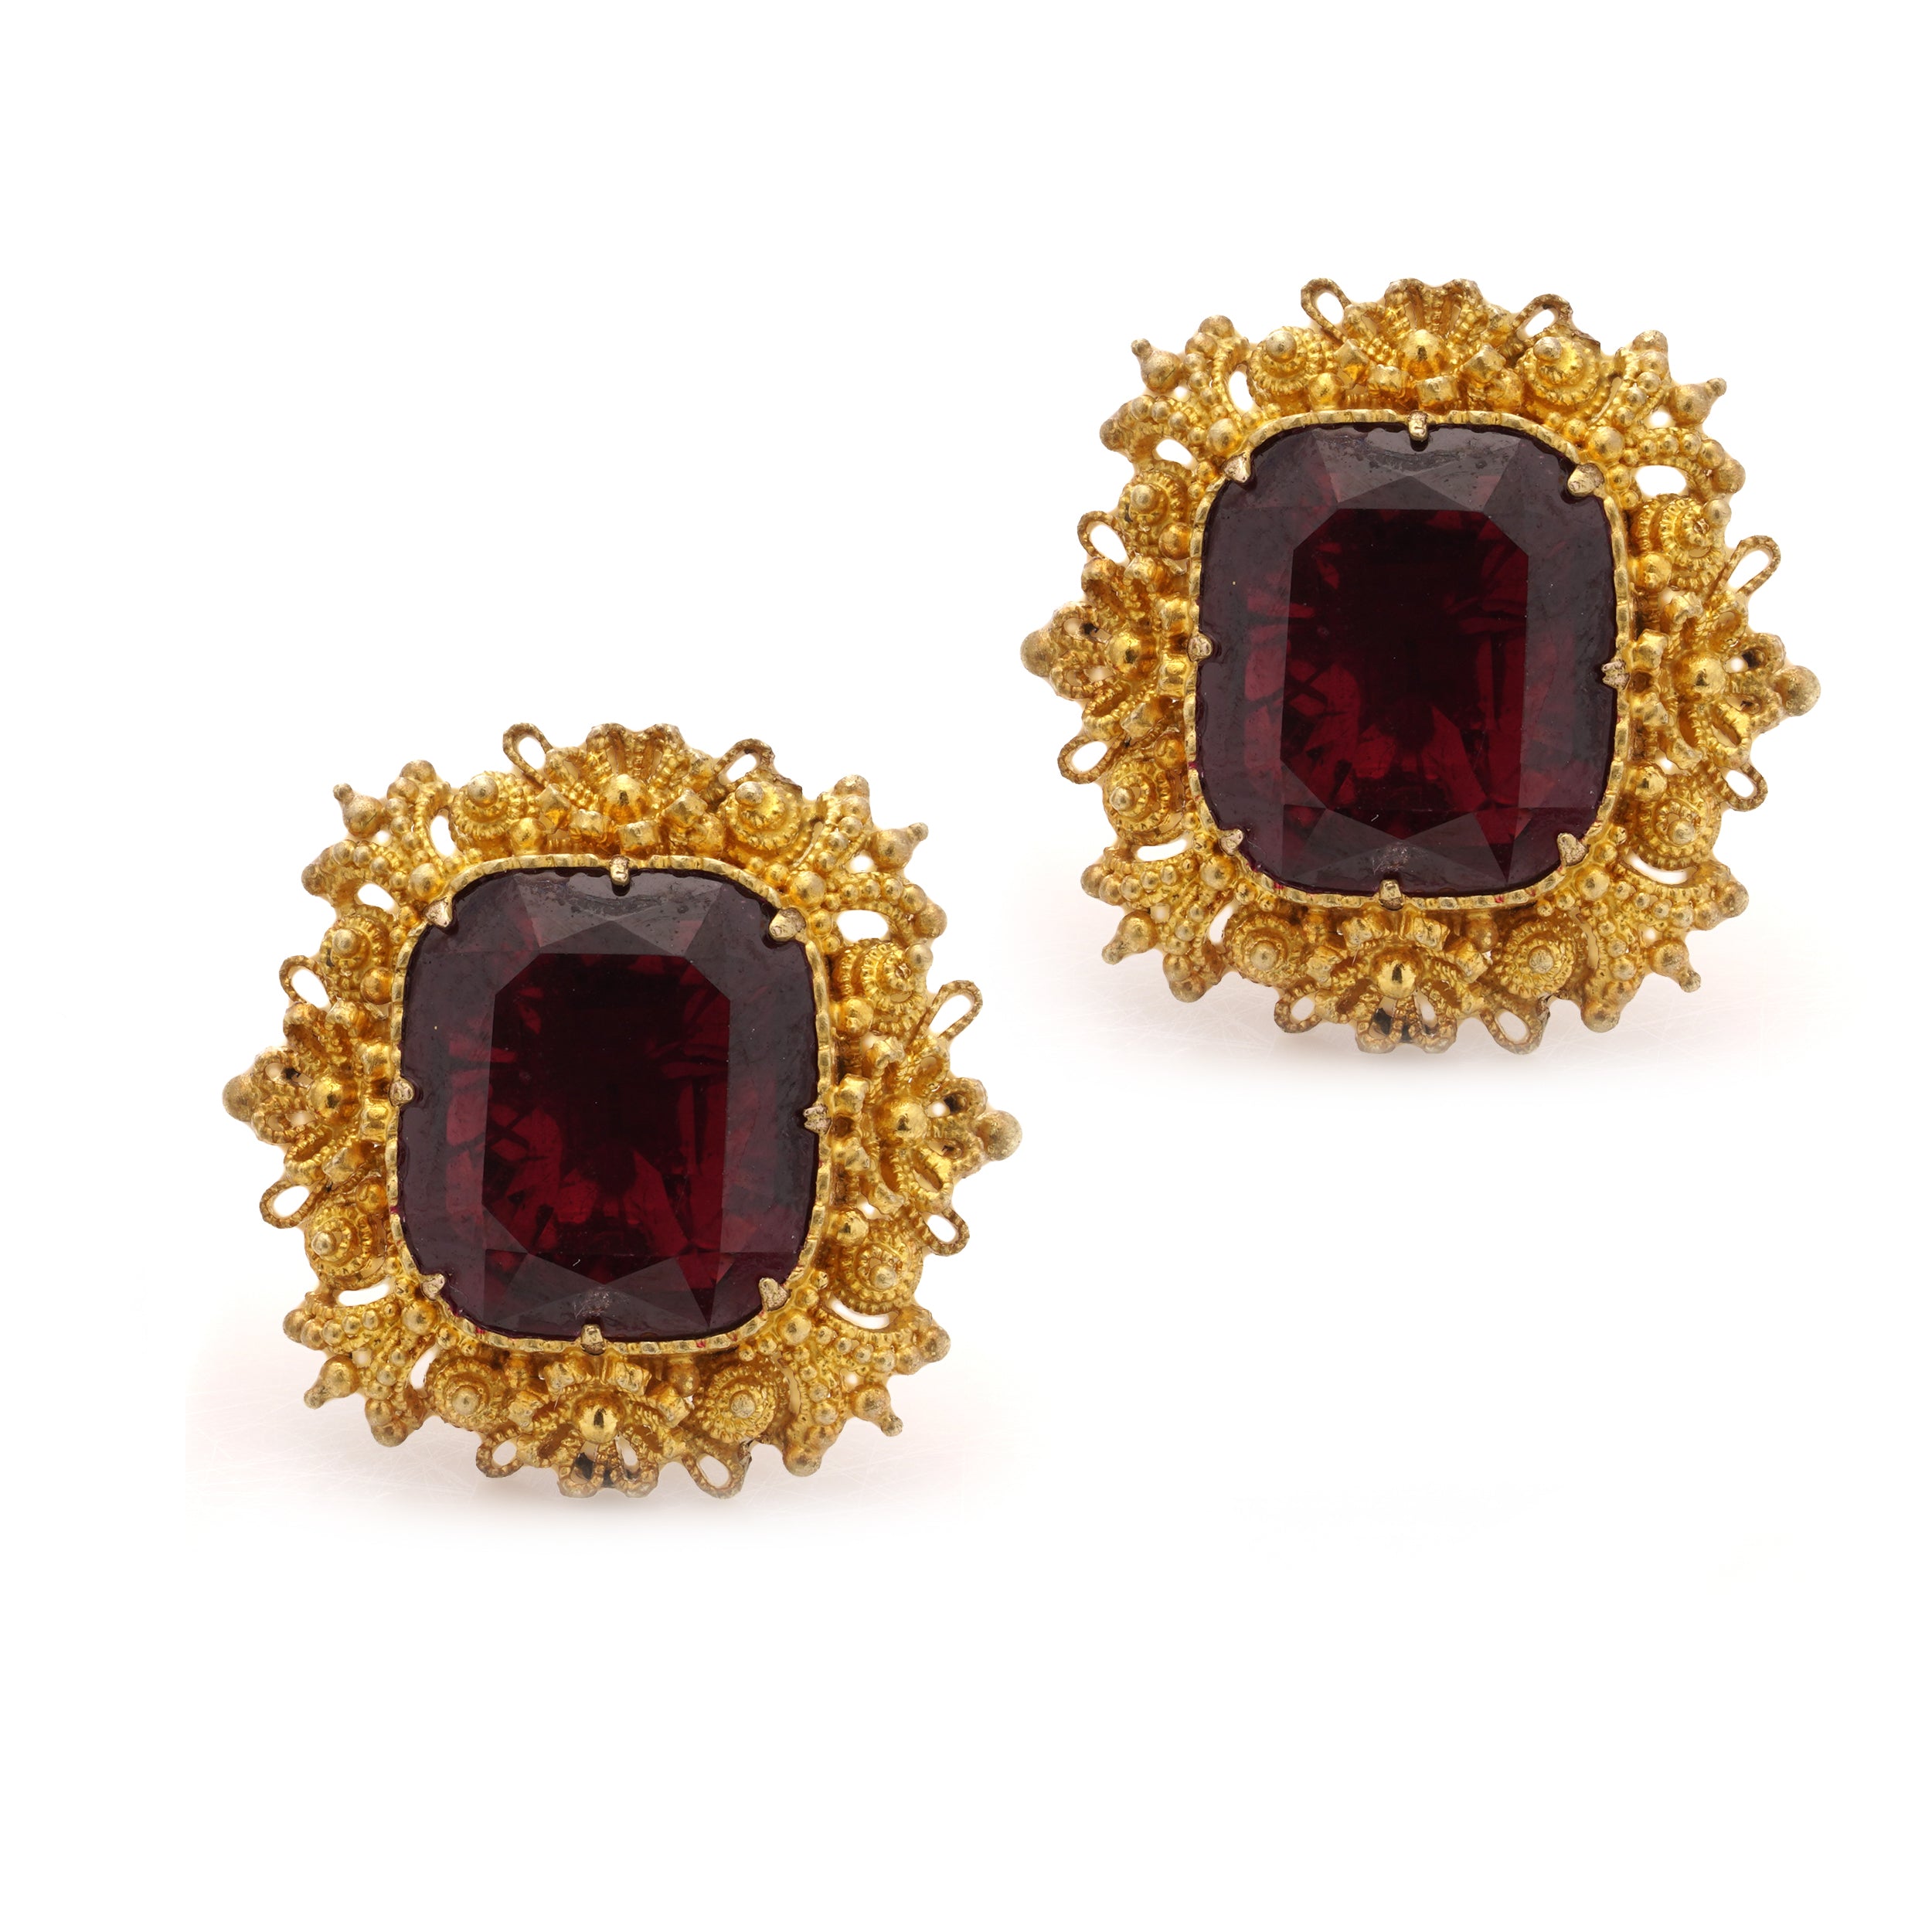 Regency Gold & Garnet Earrings - Wildsmith Jewellery